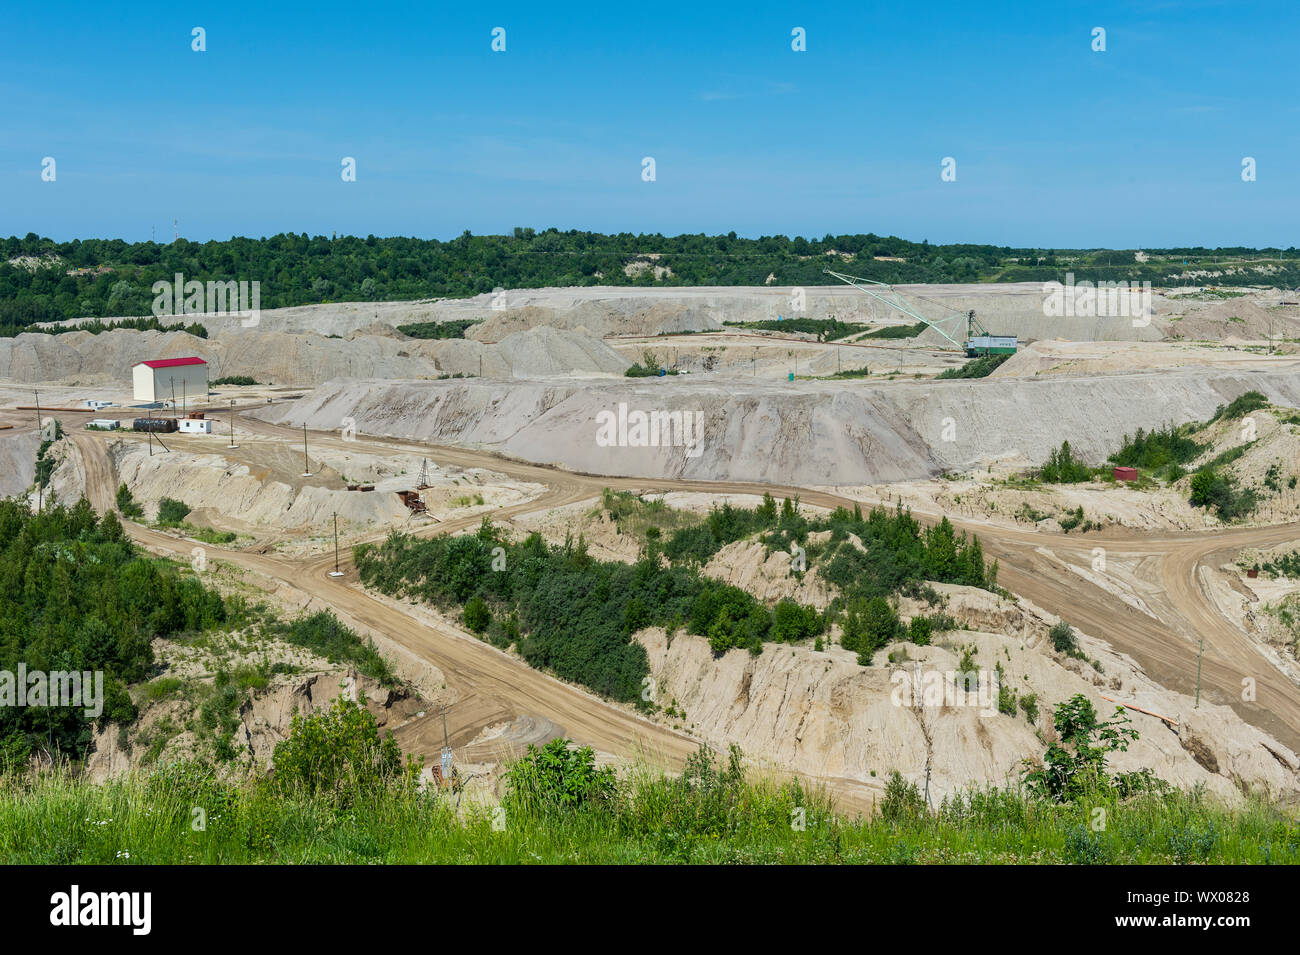 À ciel ouvert de la mine d'ambre Primorskoye, Yantarny, Kaliningrad, Russie, Europe Banque D'Images